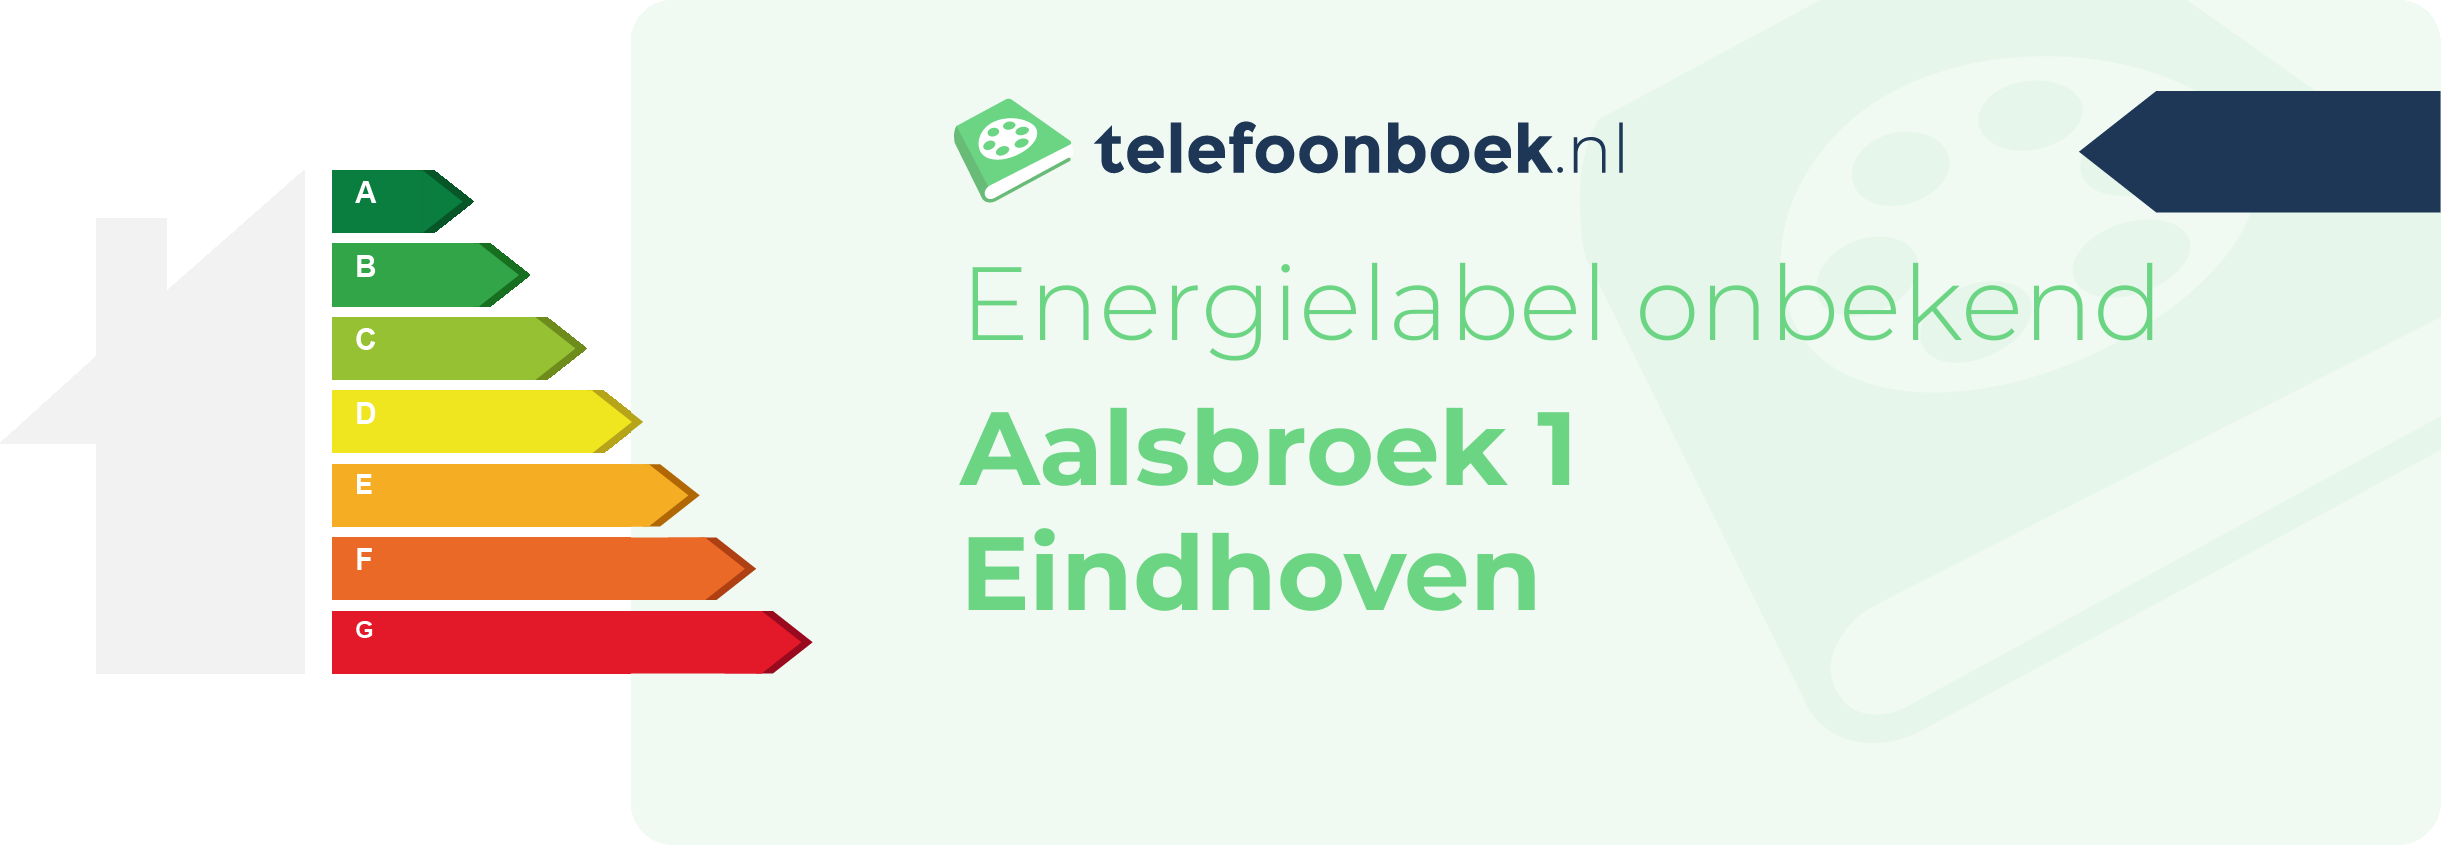 Energielabel Aalsbroek 1 Eindhoven